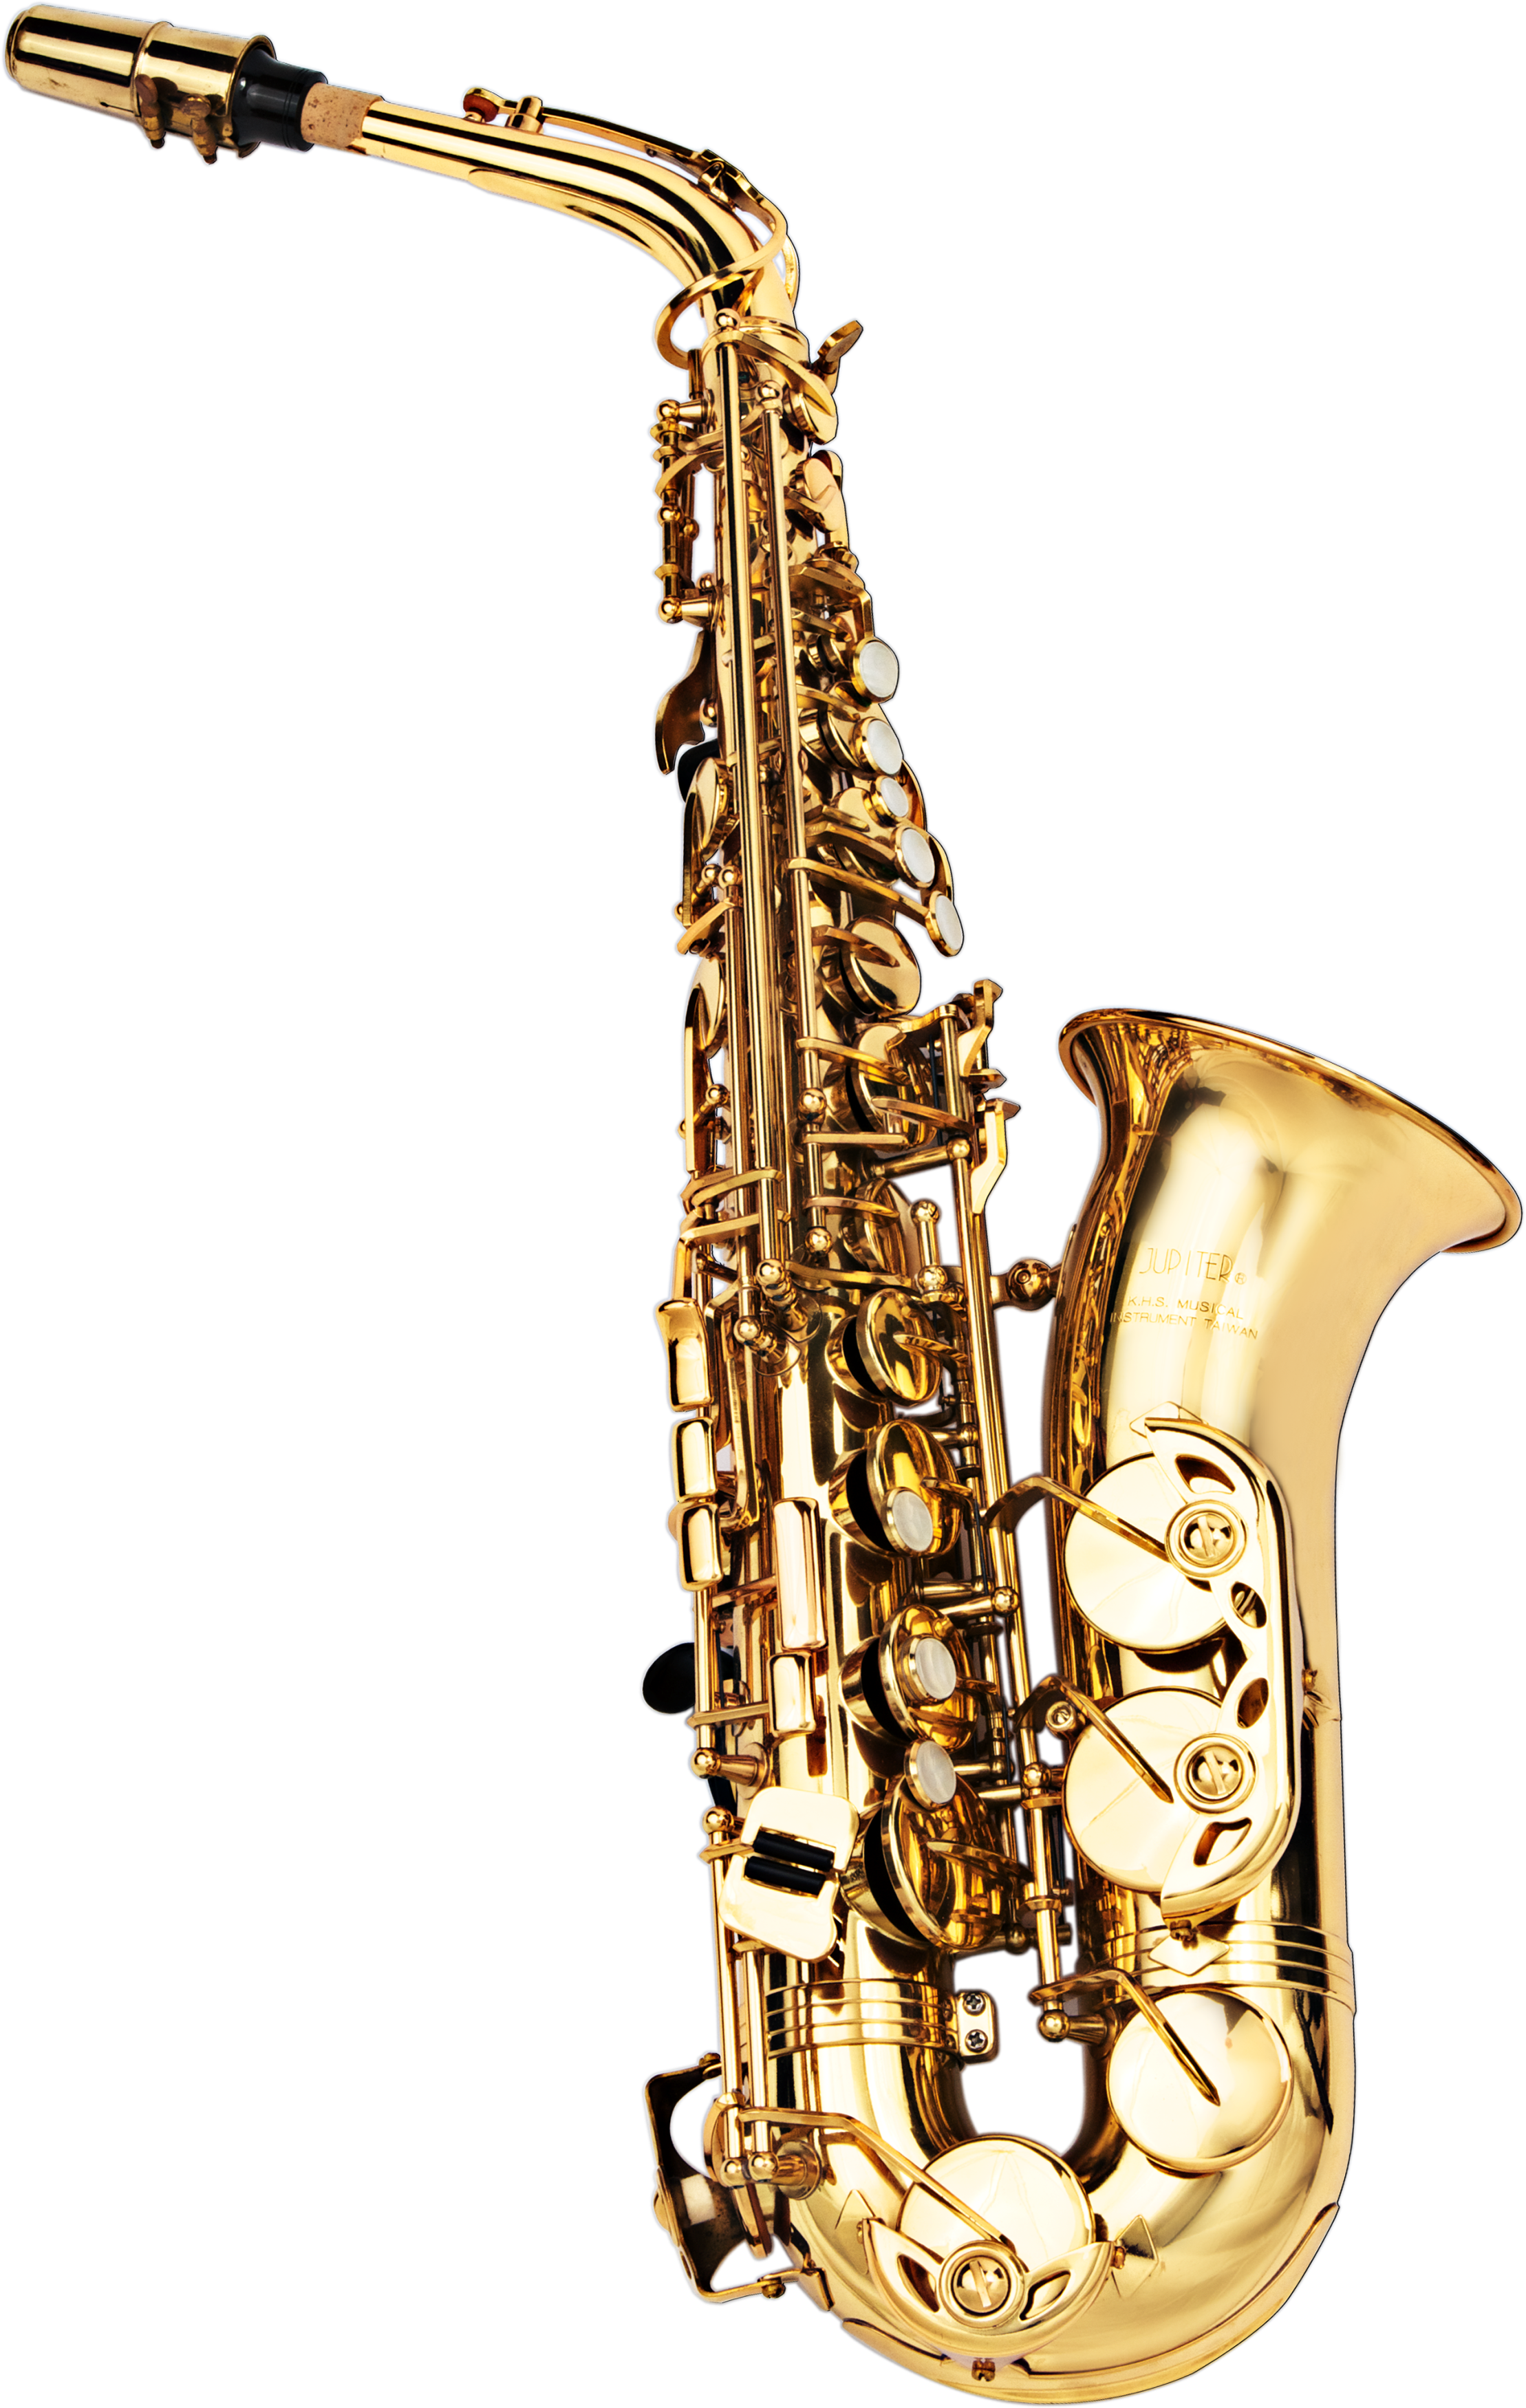 Saksofon, alat musik